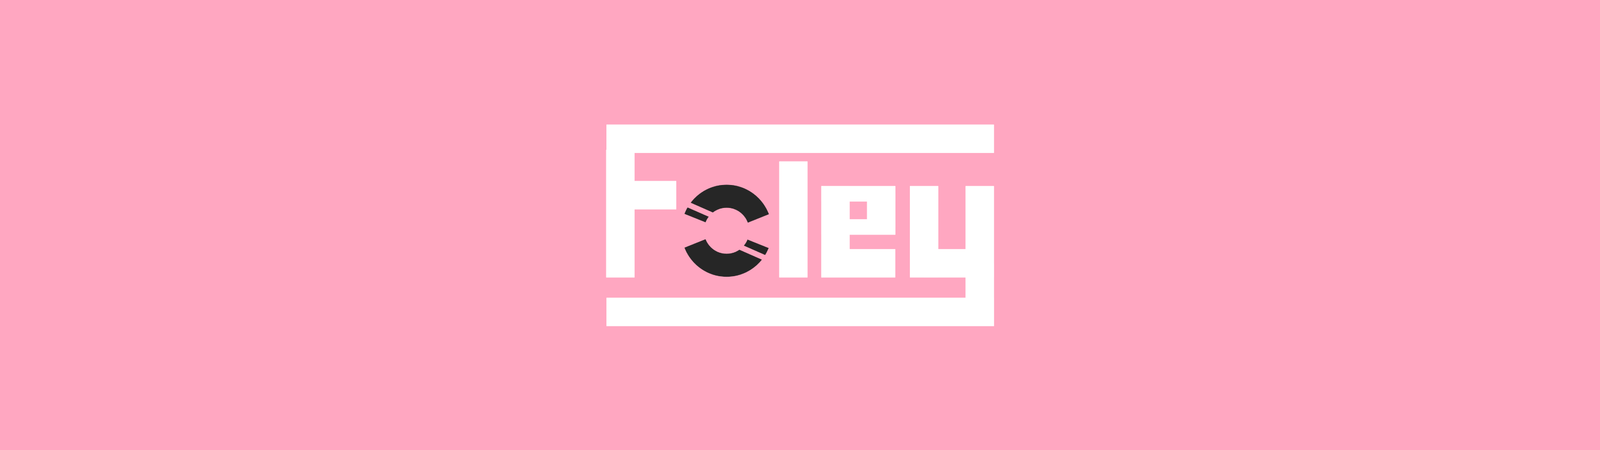 Foley Magazine